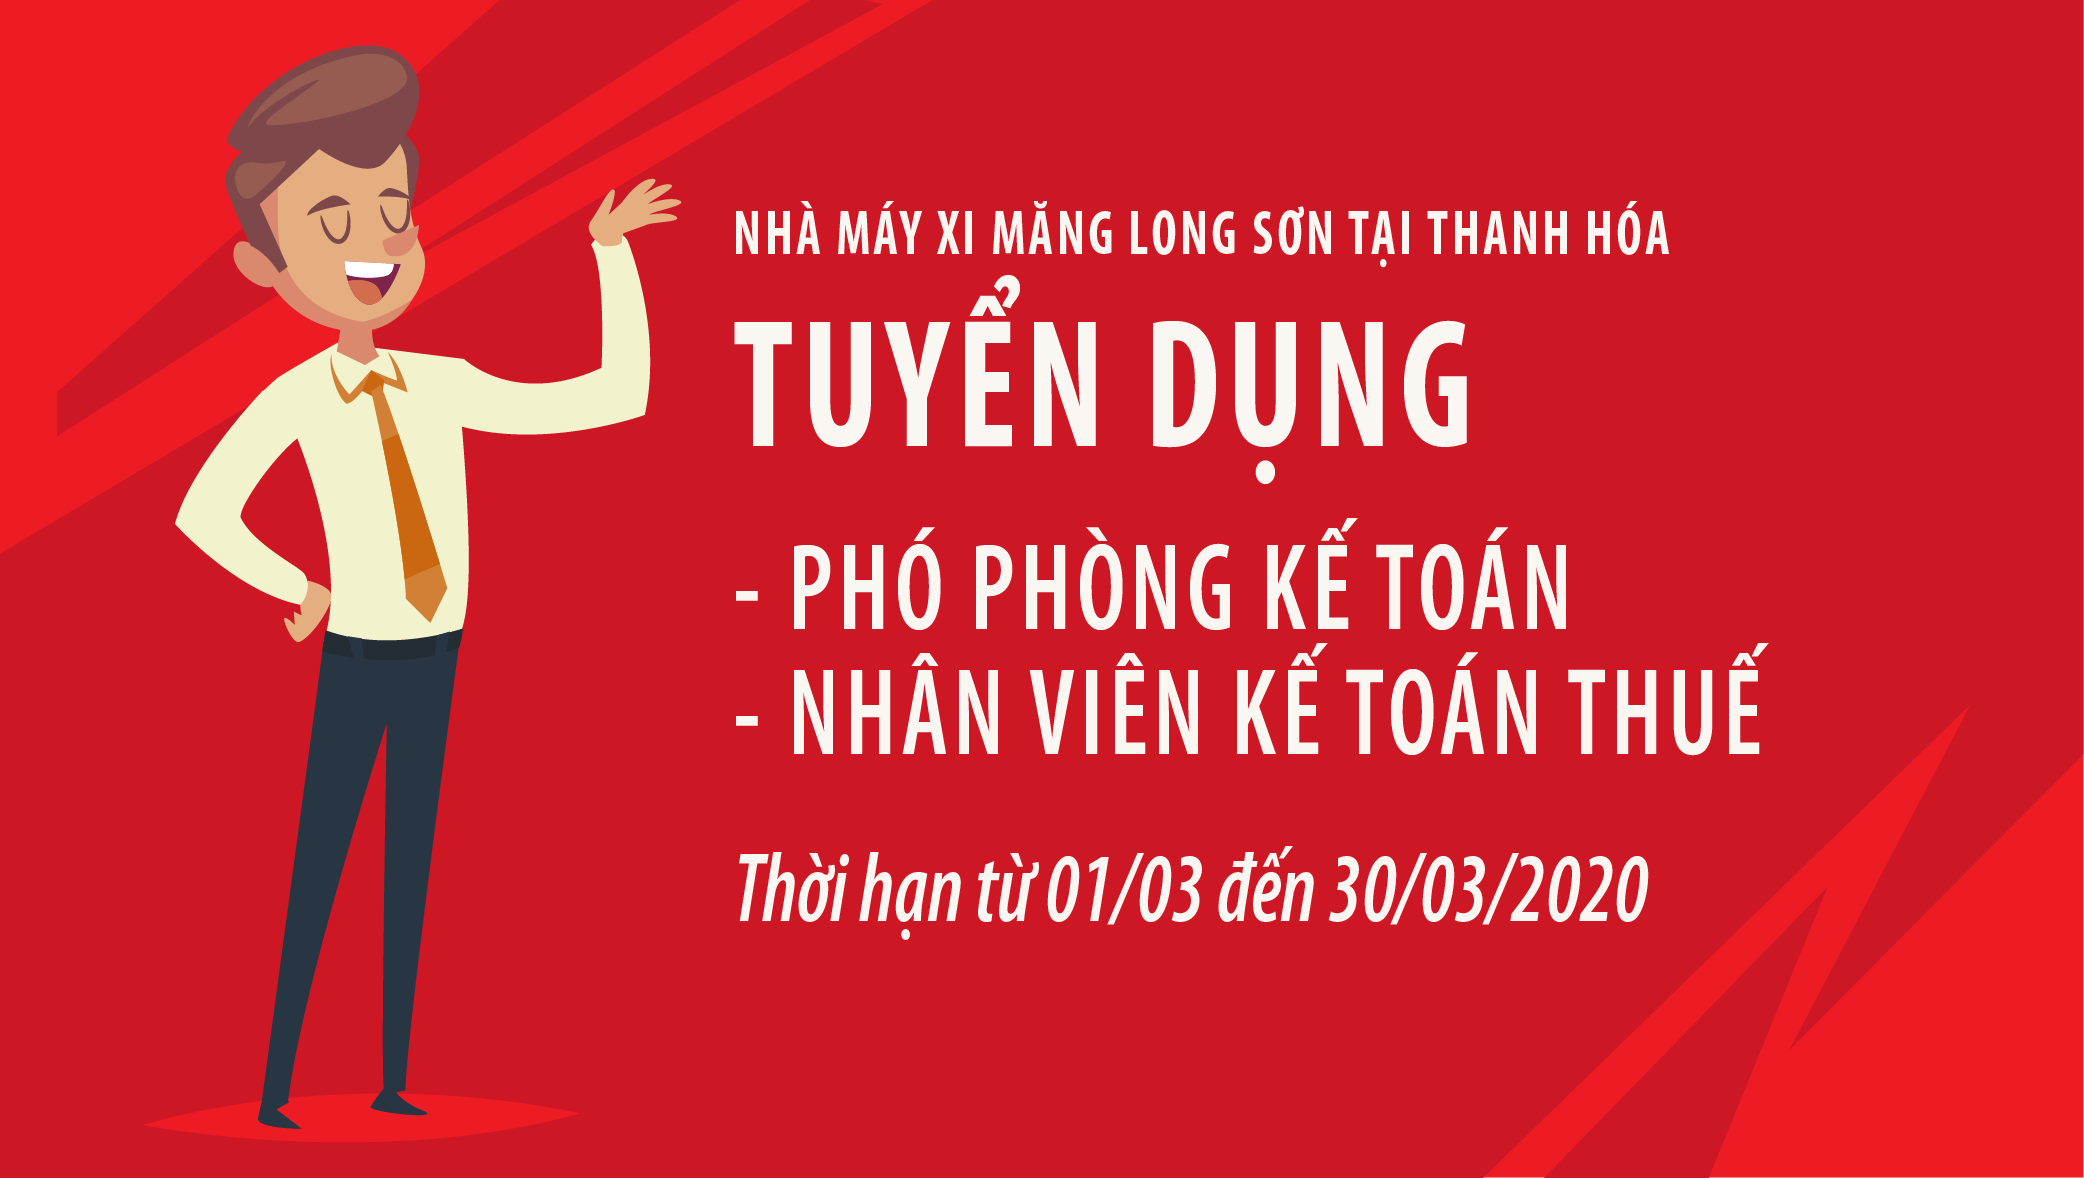 Xi măng Long Sơn : Tuyển dụng Phó Phòng kế toán & Kế toán thuế